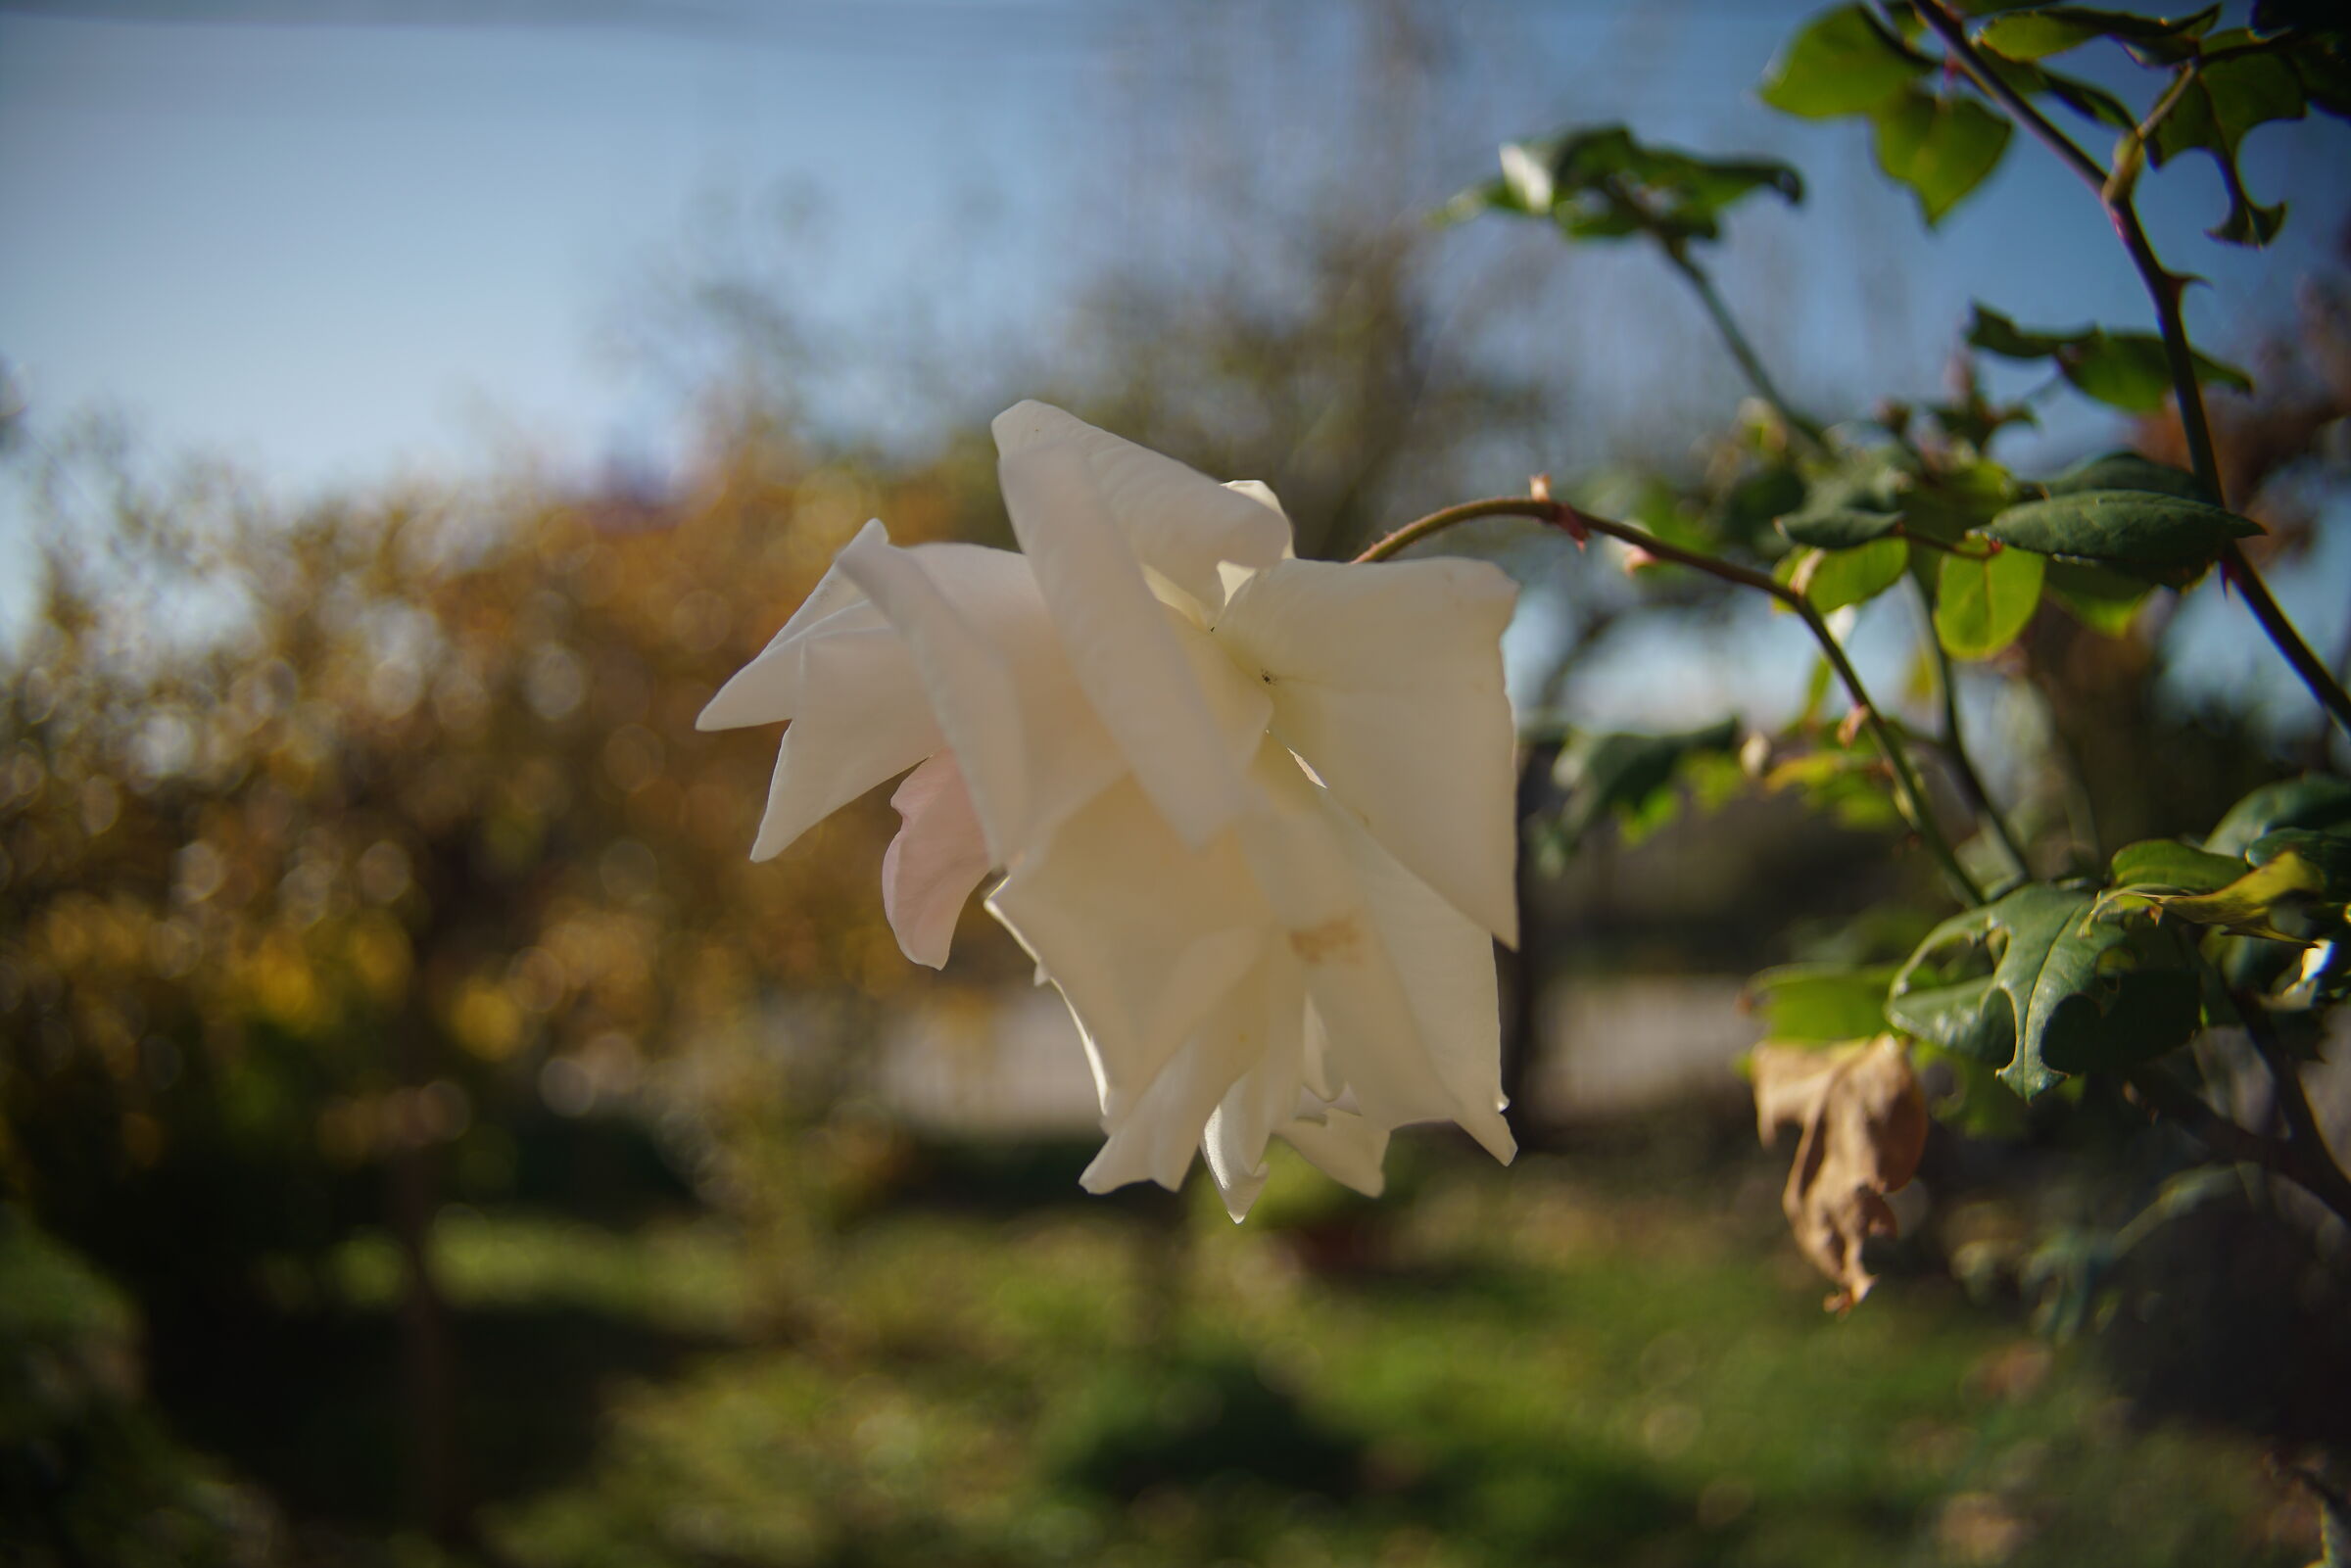 White rose...